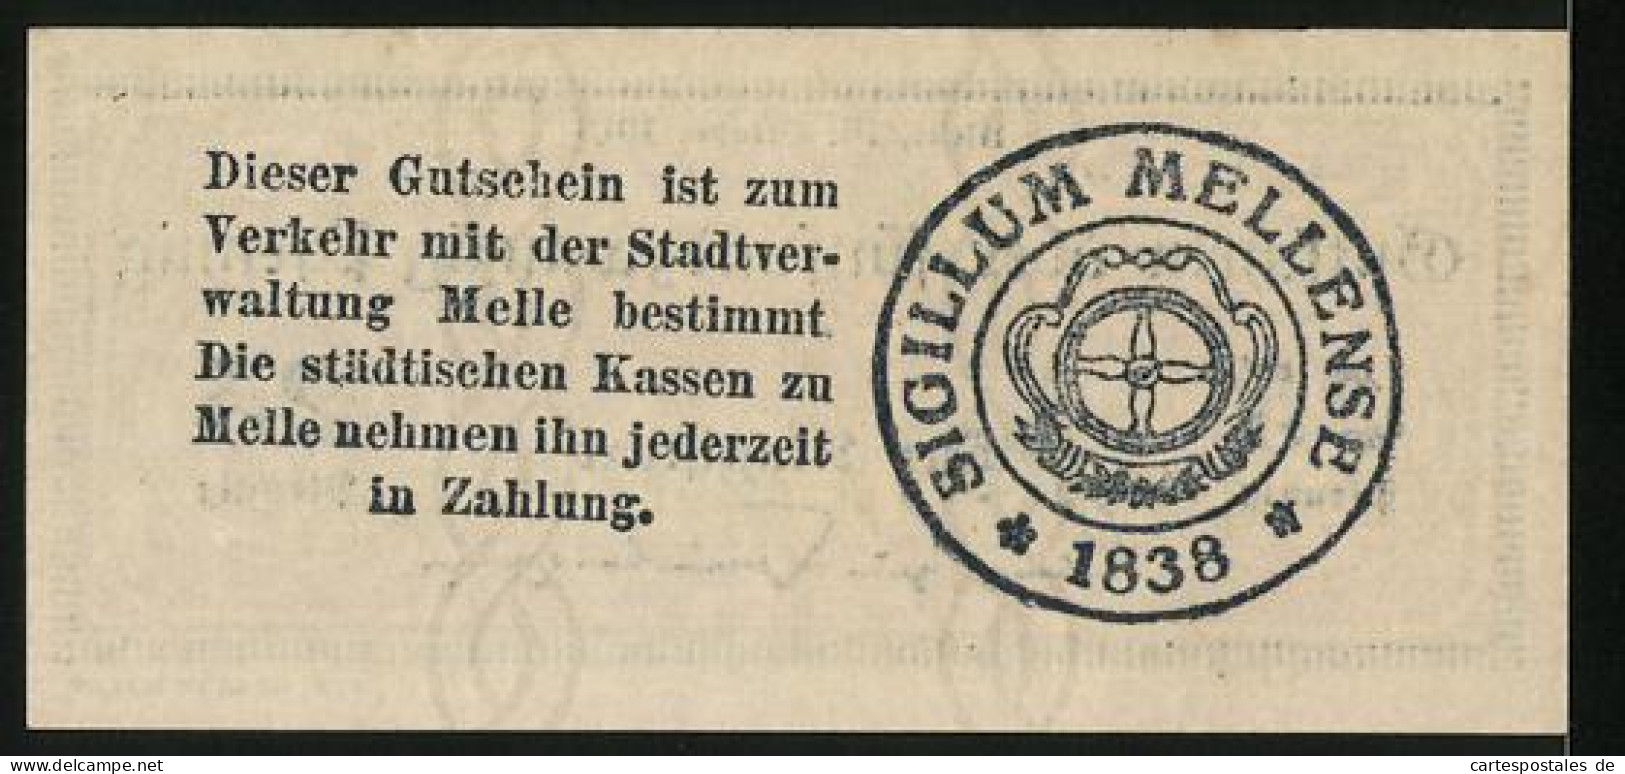 Notgeld Melle 1918, 25 Pfennig, Rathaus Im Hintergrund  - [11] Local Banknote Issues